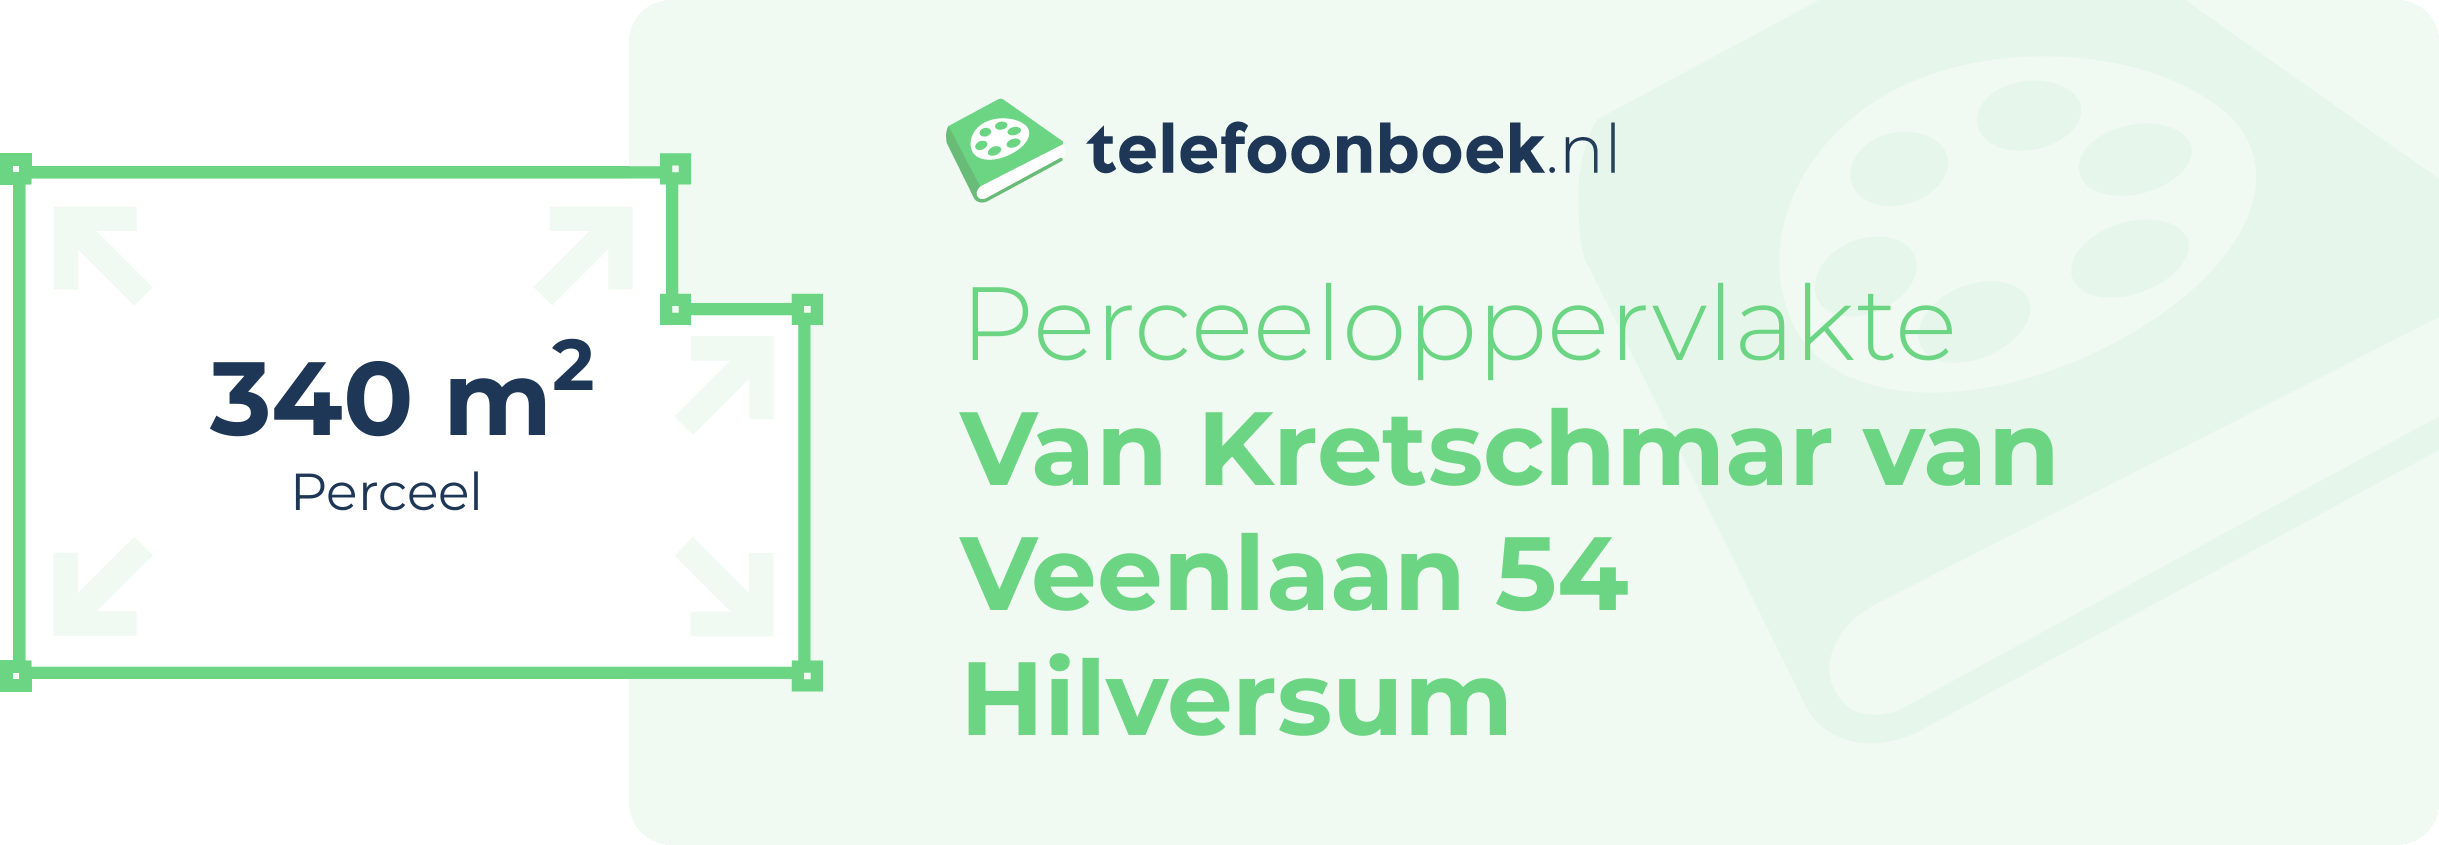 Perceeloppervlakte Van Kretschmar Van Veenlaan 54 Hilversum